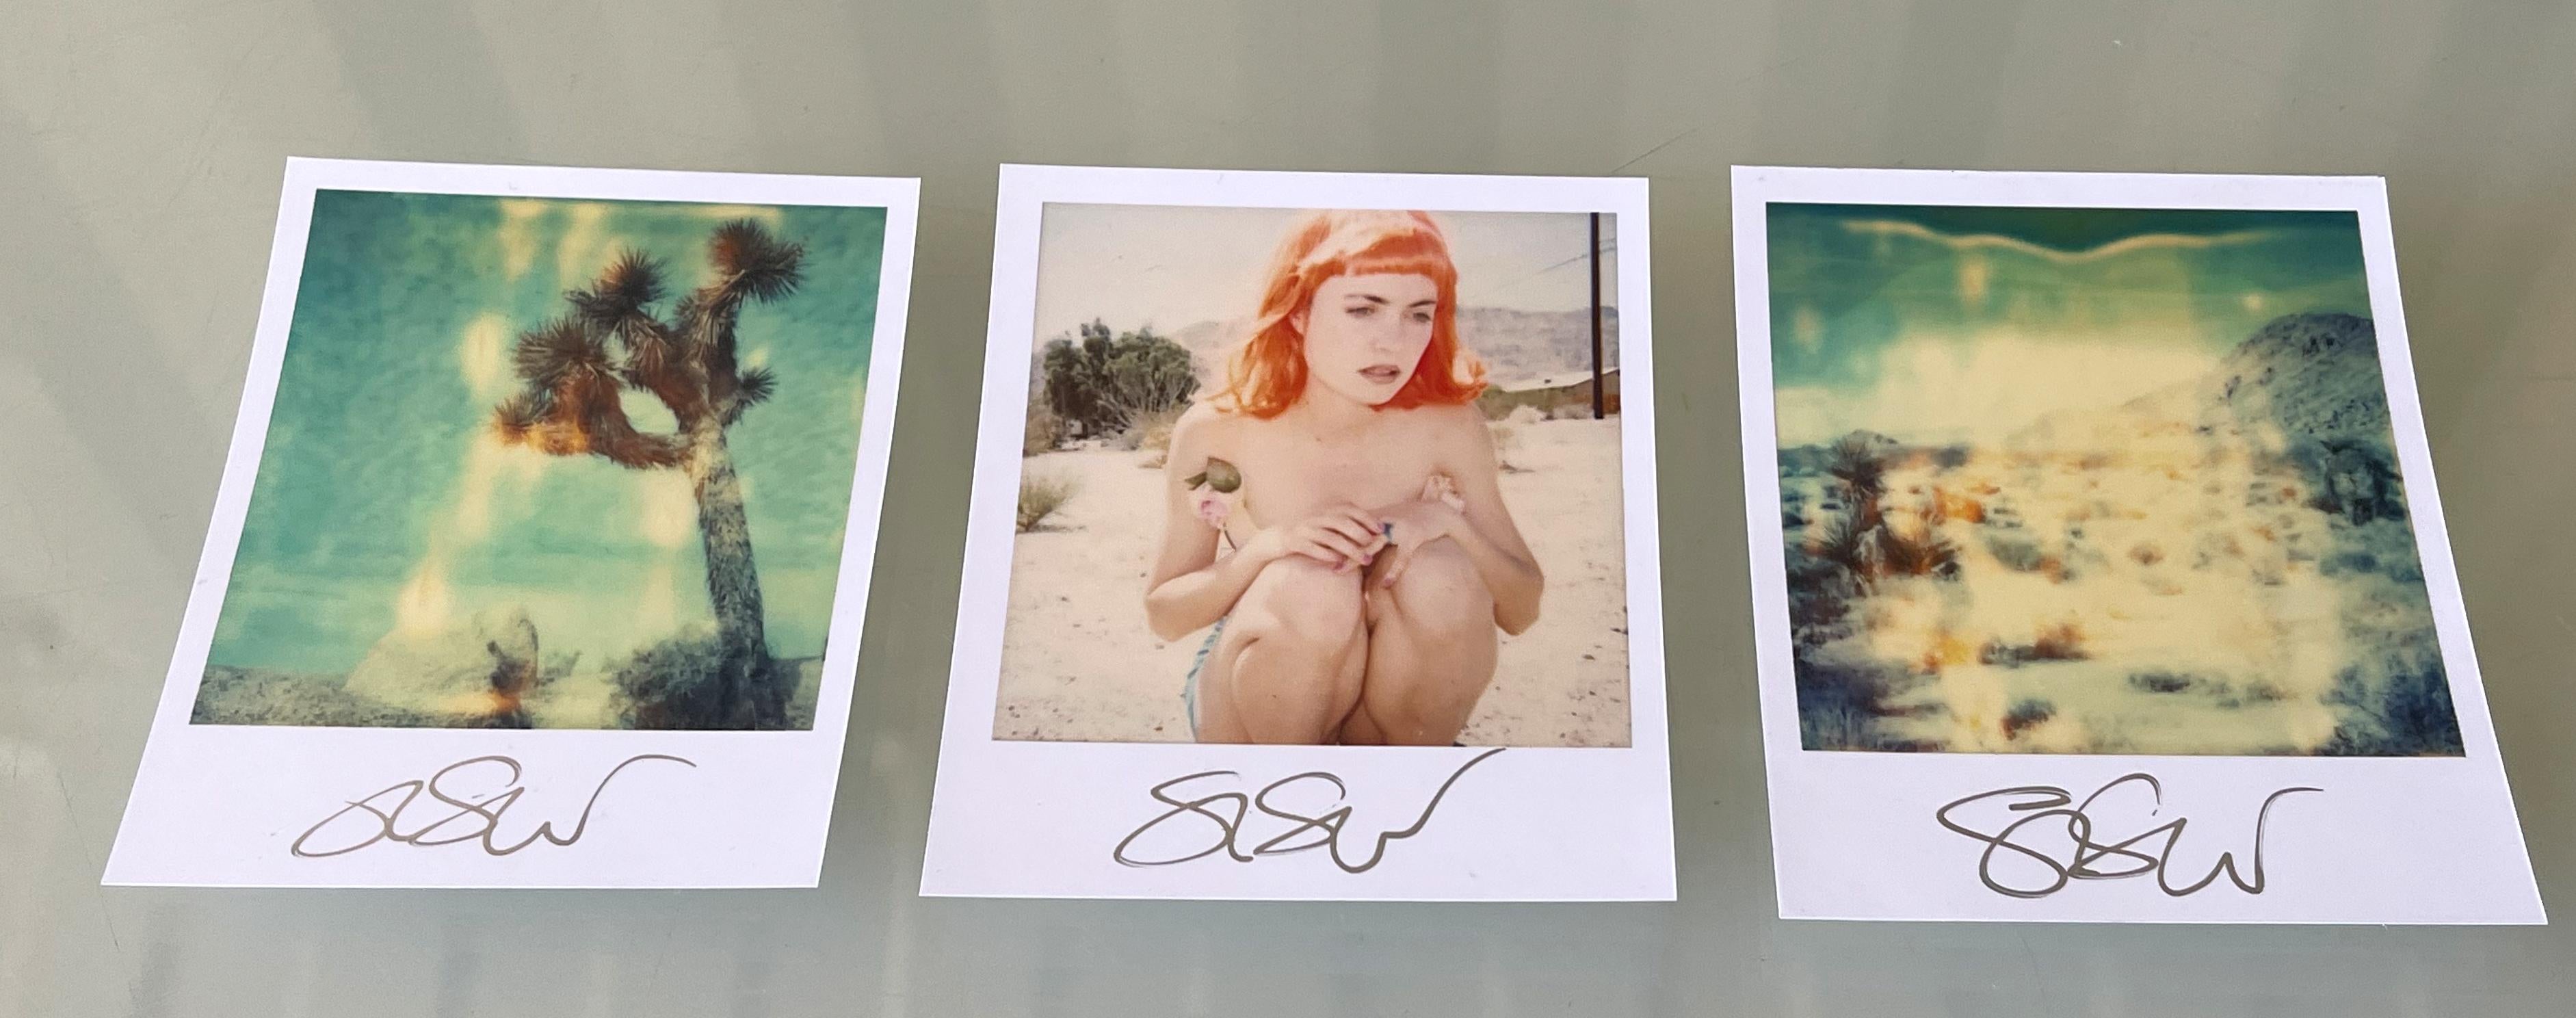 3 Stefanie Schneider Unbegrenzte Minis im Polaroidformat 
'Radha Mind Screen' - 1999 - Triptychon

vorne signiert, nicht montiert. 
3 digitale Farbfotografien auf der Grundlage der 3 Polaroids. 
10,7 x 8,8 cm (Bild 7,9 x 7,7 cm) pro Stück, 10,7 x